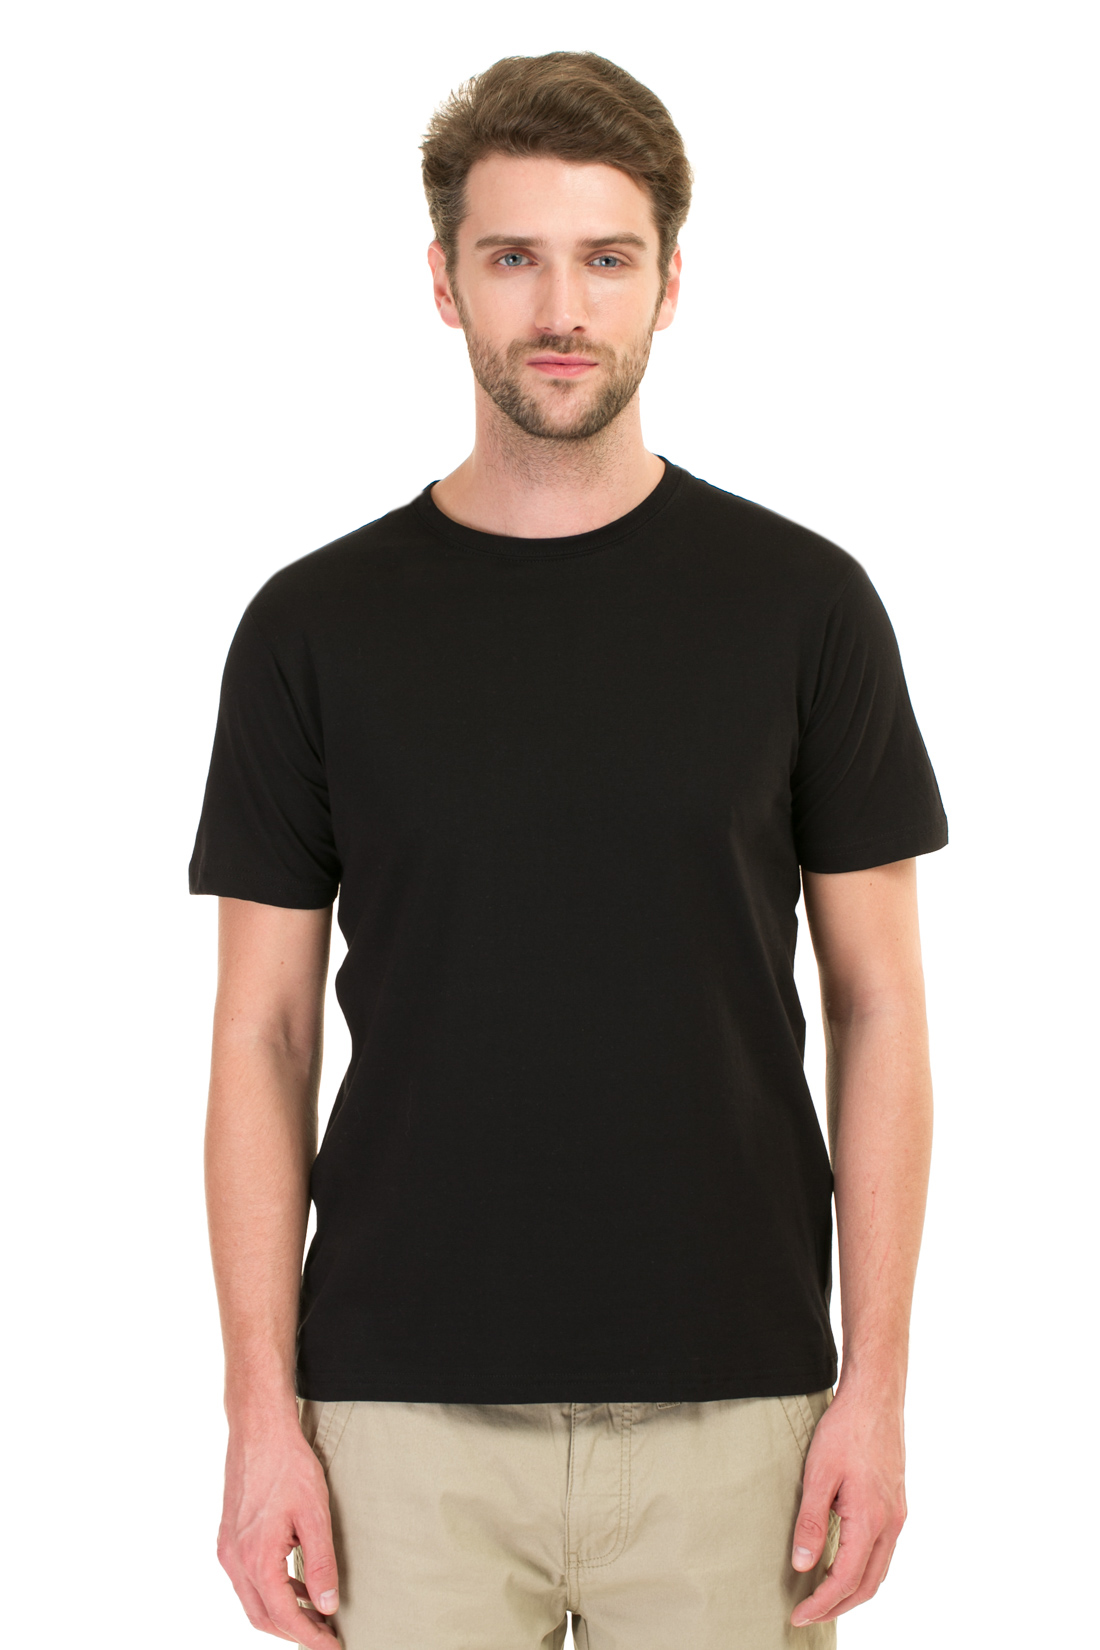 Комплект из двух футболок (арт. baon B737082), размер L, цвет черный